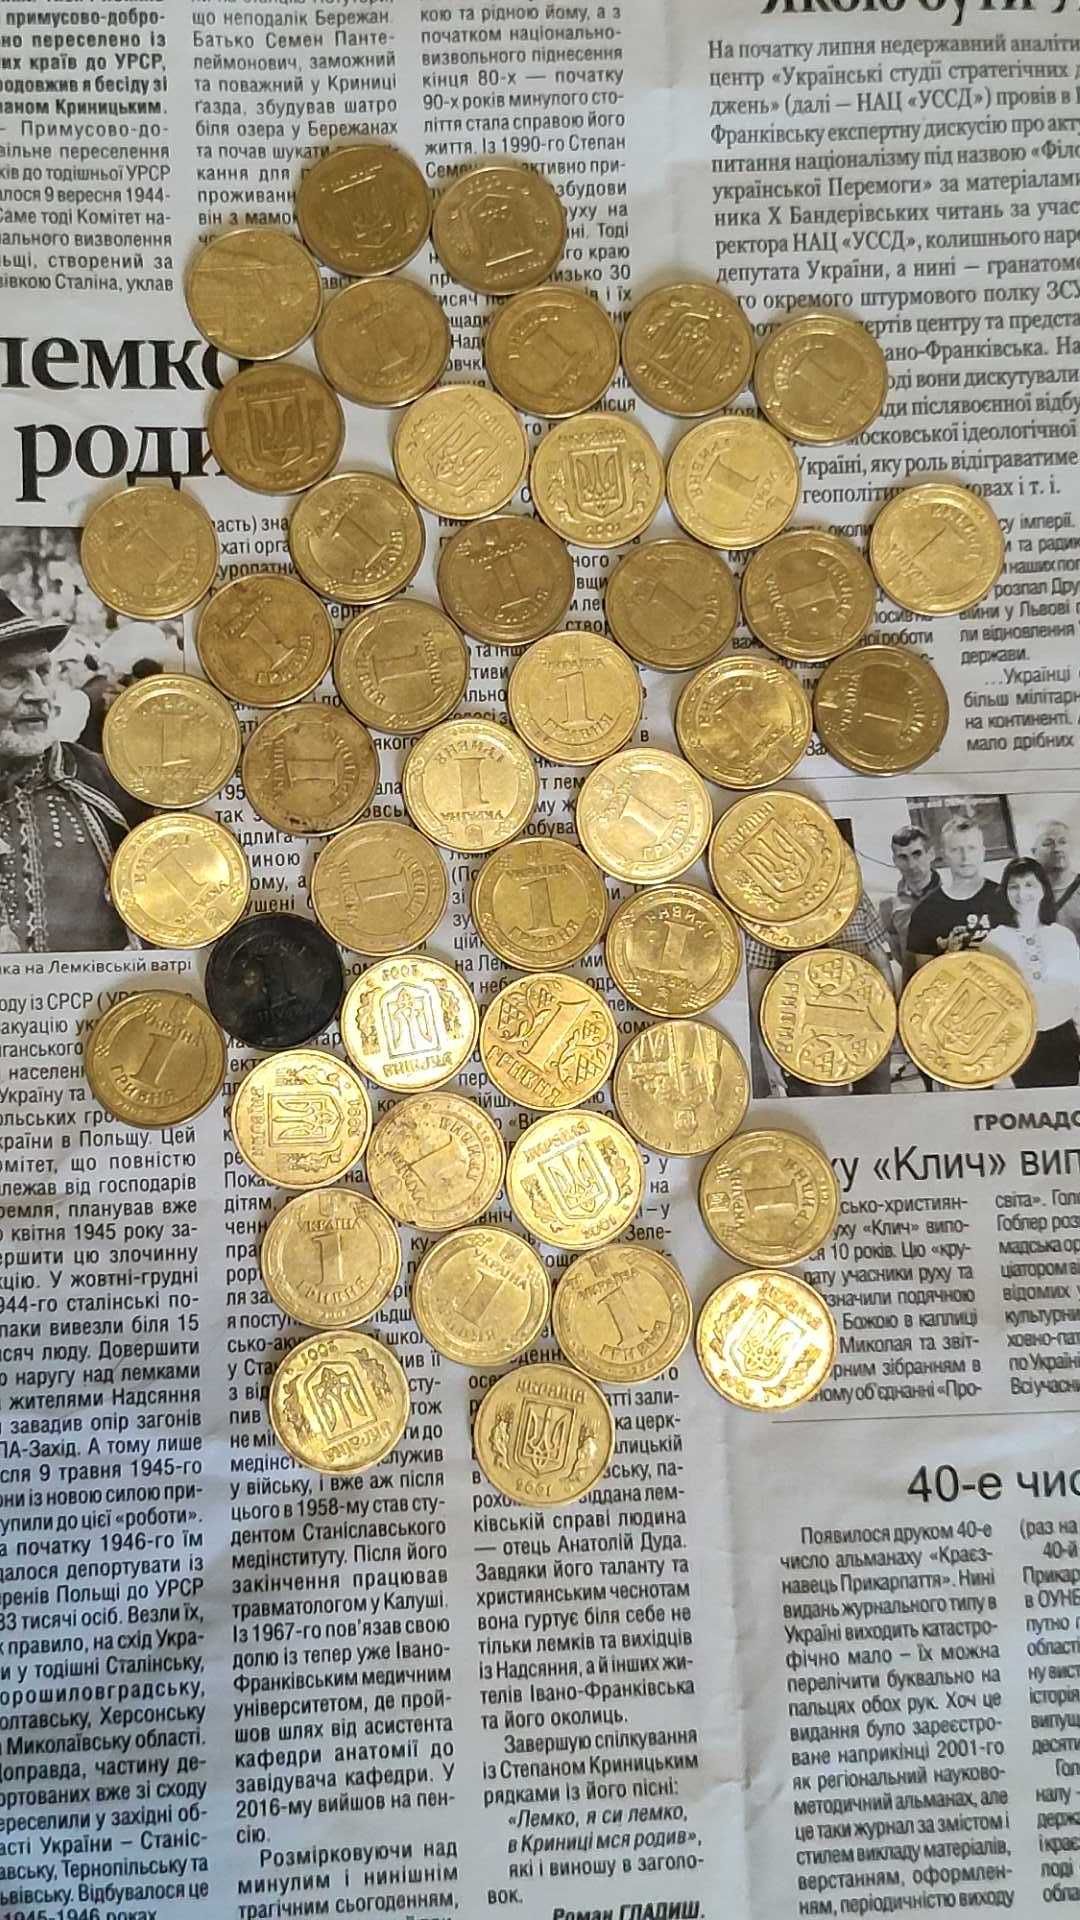 Монета монети гривня копійок